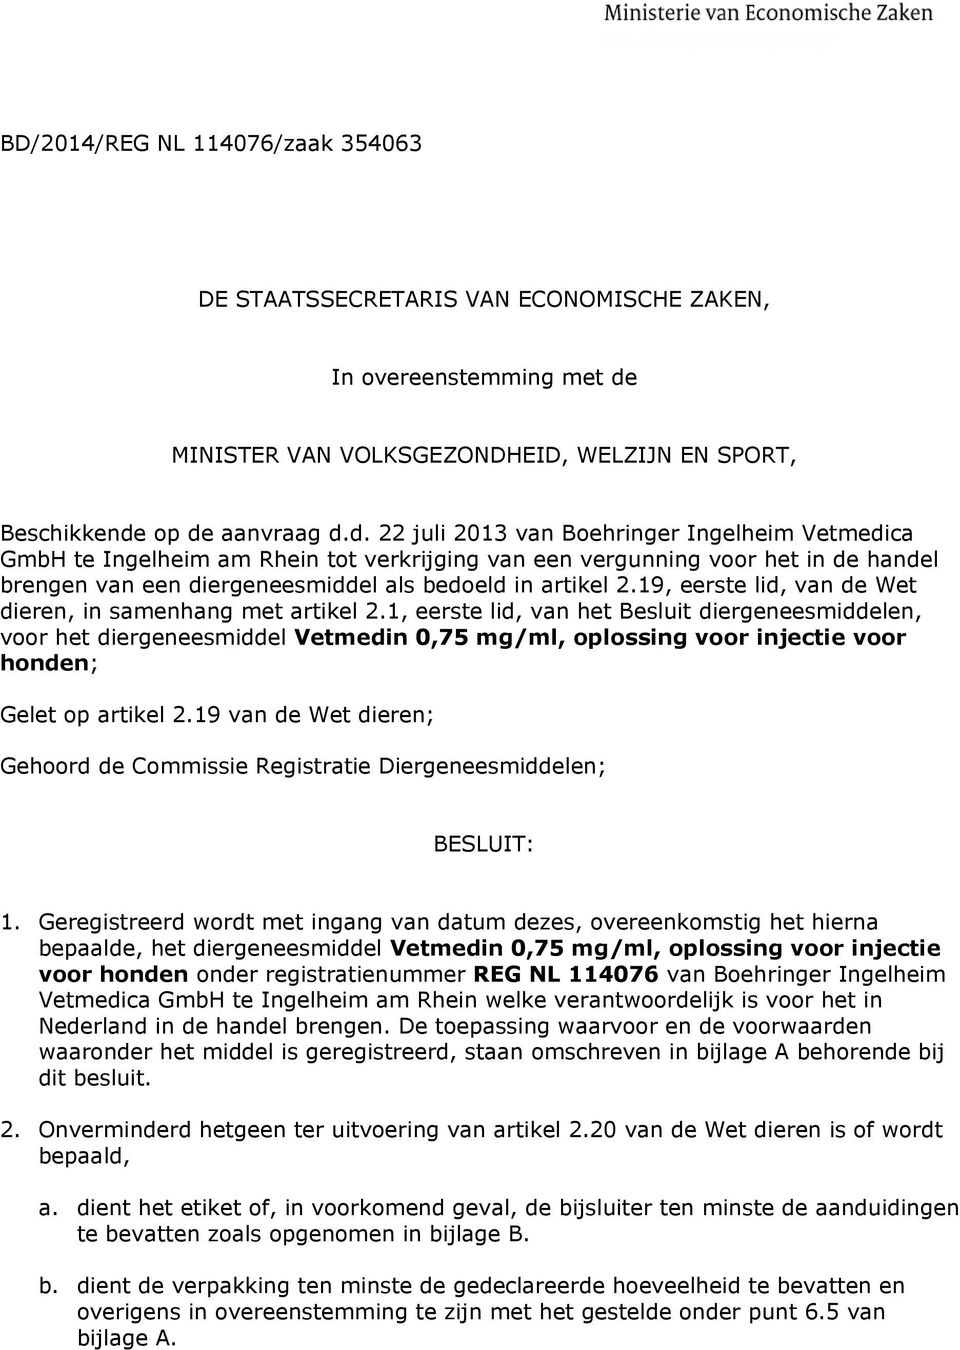 op de aanvraag d.d. 22 juli 2013 van Boehringer Ingelheim Vetmedica GmbH te Ingelheim am Rhein tot verkrijging van een vergunning voor het in de handel brengen van een diergeneesmiddel als bedoeld in artikel 2.